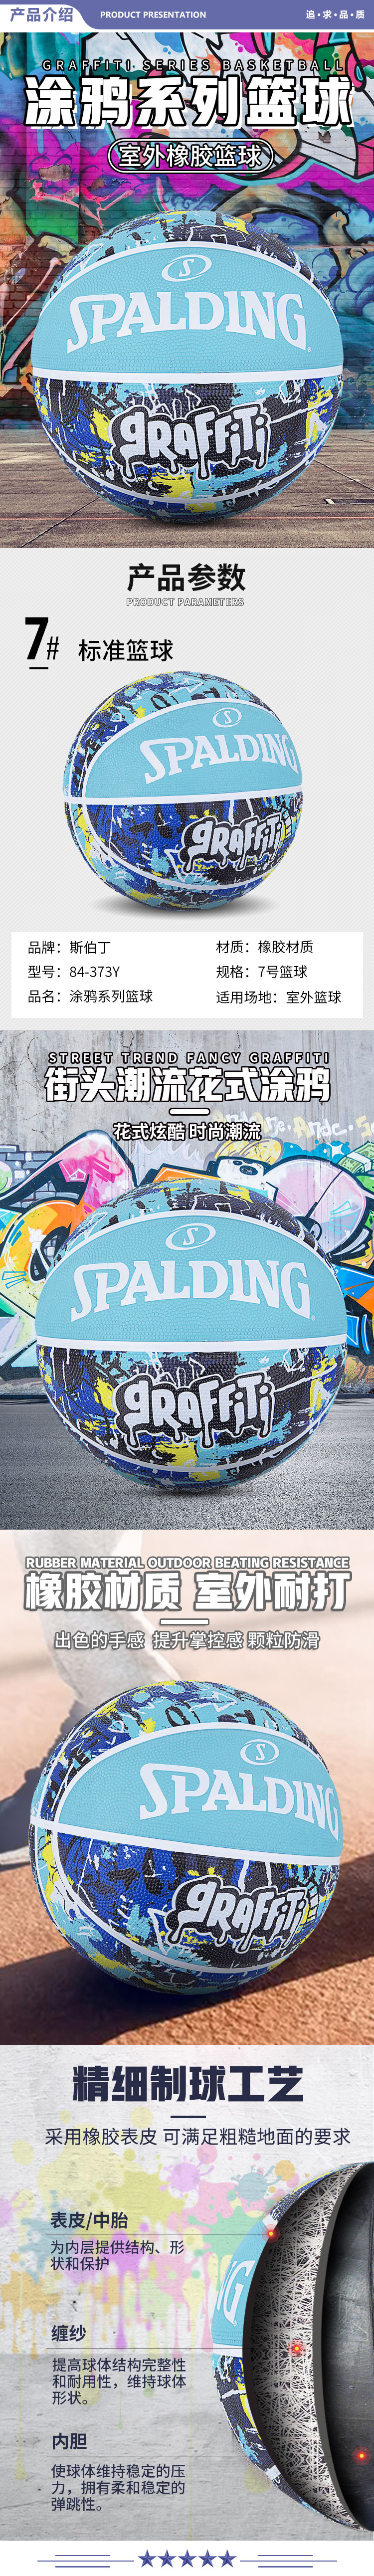 斯伯丁 84-373Y Spalding酷炫涂鸦橡胶耐磨室外7号篮球蓝色 2.jpg